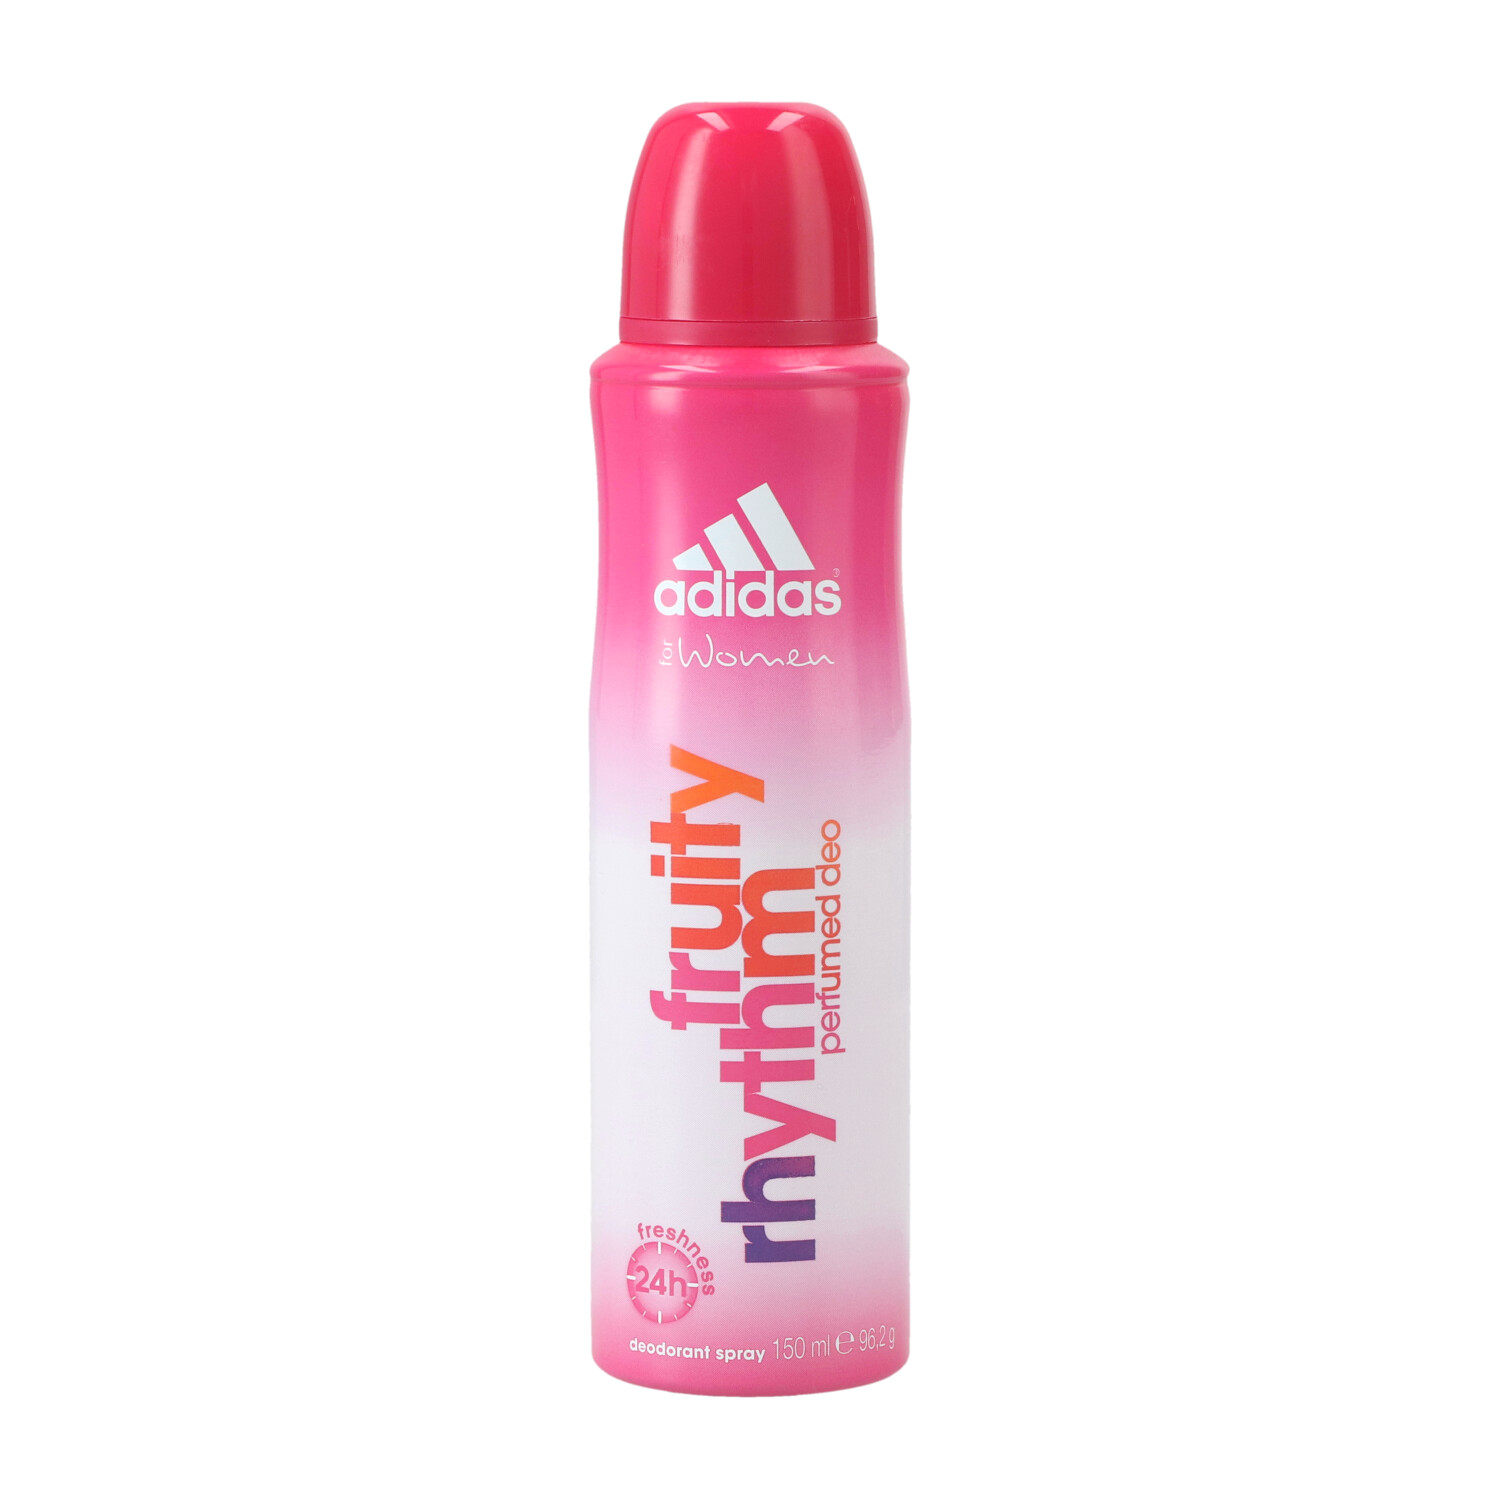 Adidas Fruity Rhythm Deospray for Women 150ml